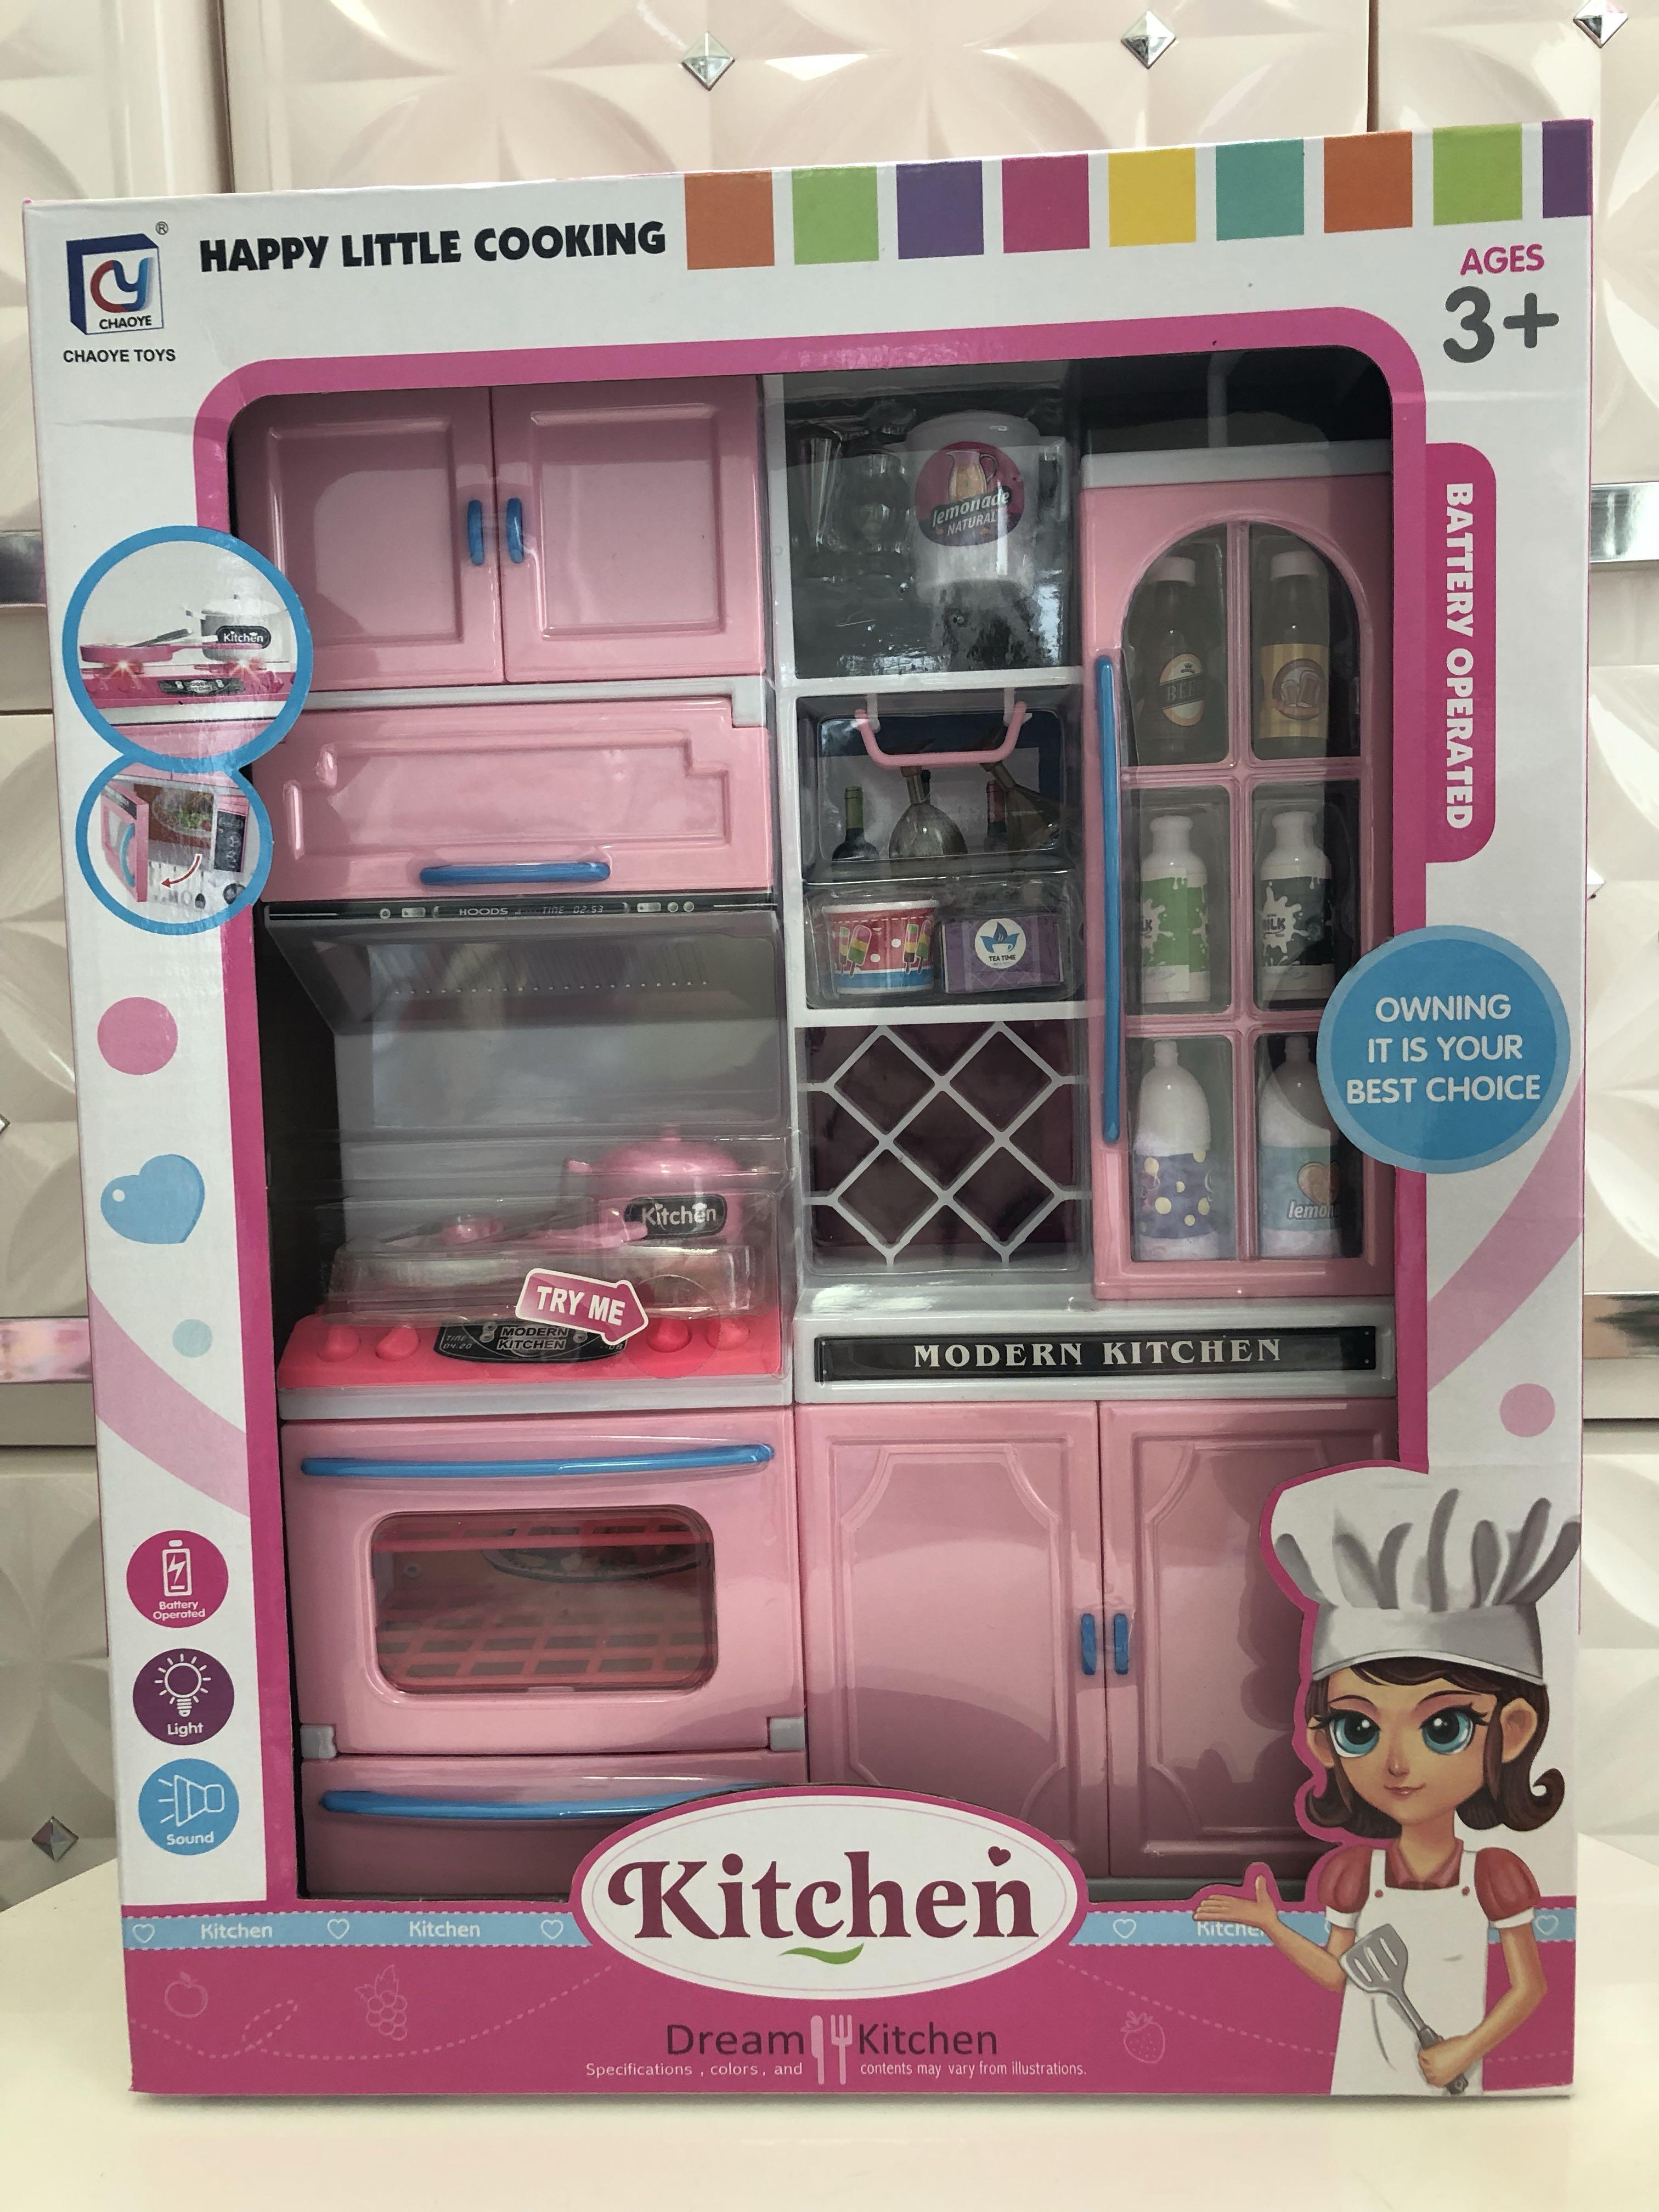 barbie pink kitchen set